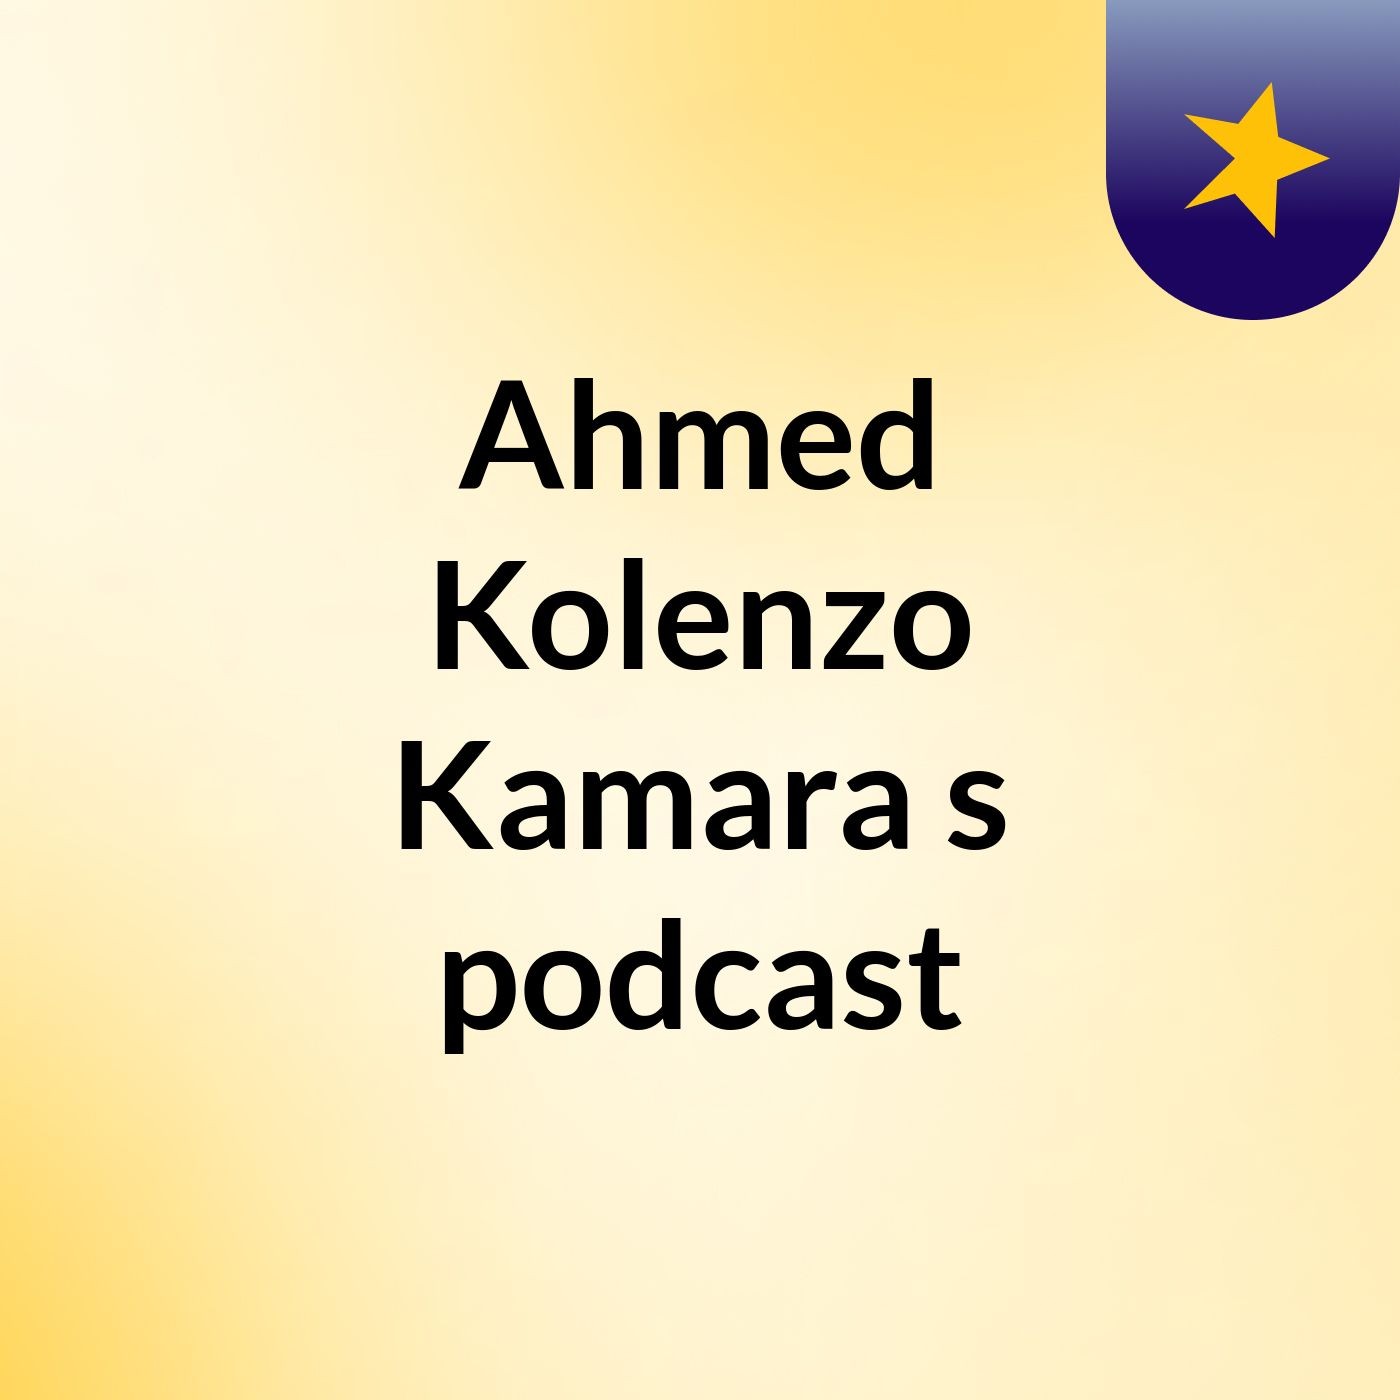 Ahmed Kolenzo Kamara's podcast